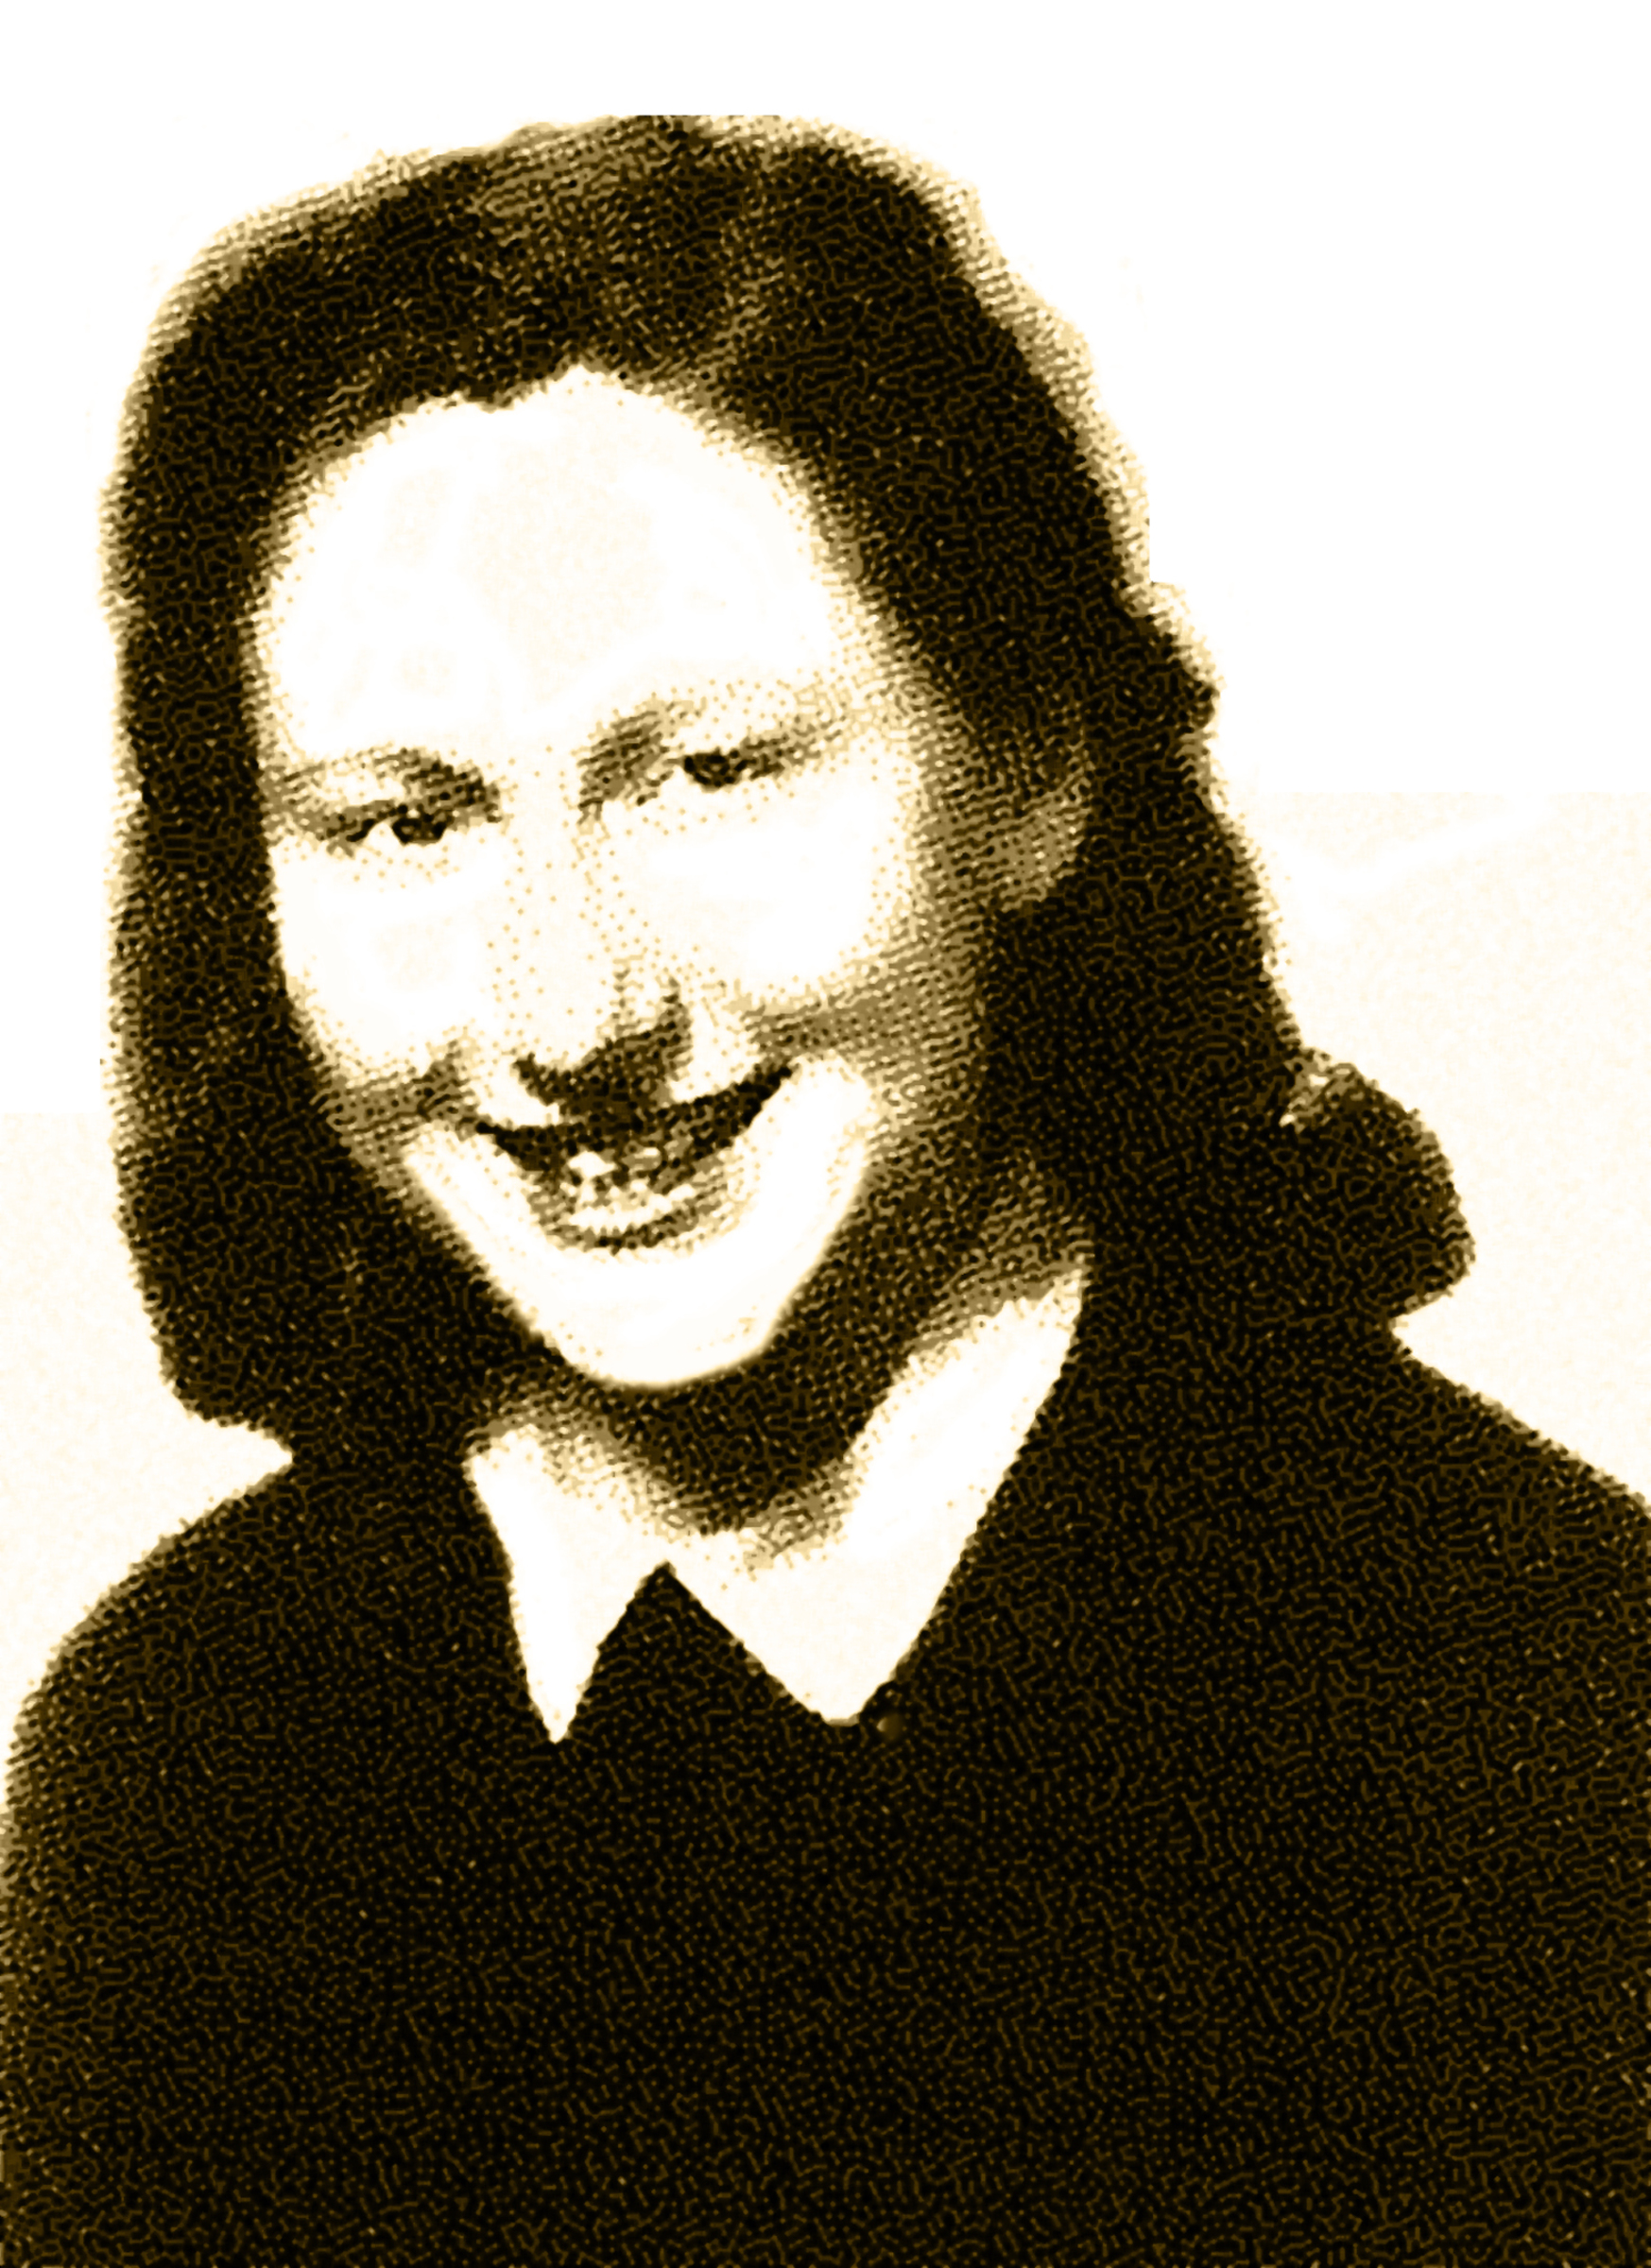 Eva Ehrlichová, after WWII